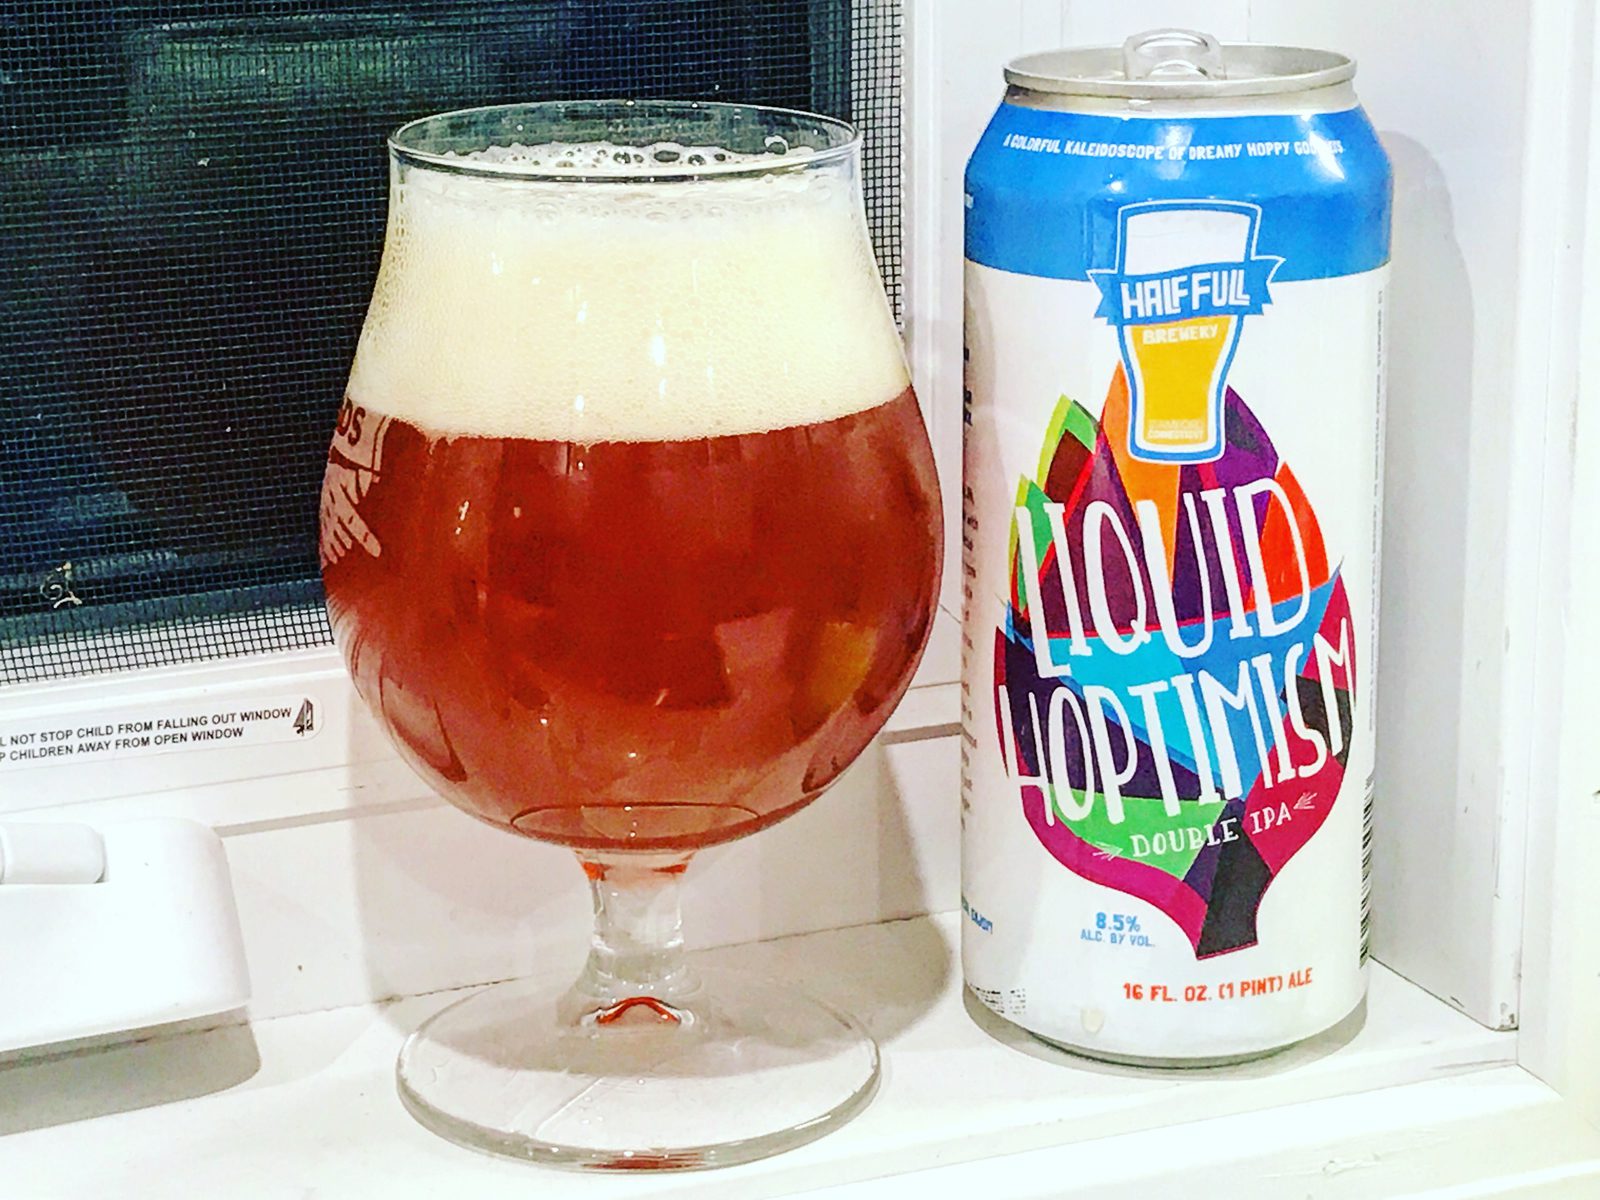 Half Full Brewery: Liquid Hoptimism